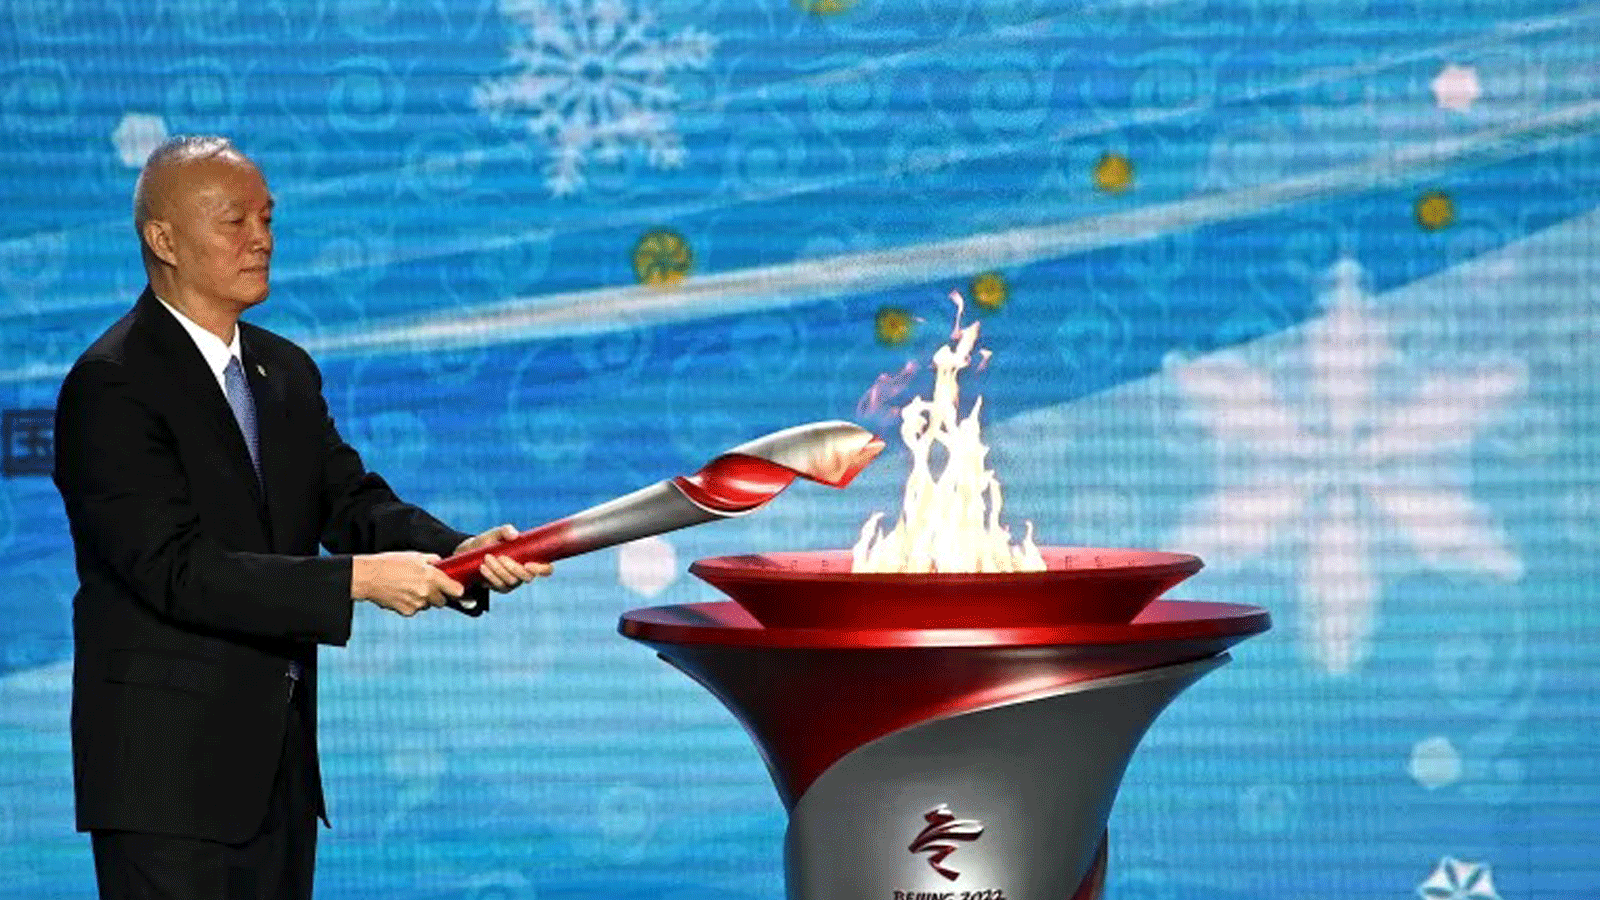 تساي تشي، سكرتير الحزب الشيوعي في بكين، يضيء المرجل خلال حفل الترحيب بالشعلة الأولمبية قبل أولمبياد بكين الشتوية 2022، في بهو البرج الأولمبي في بكين في 20 تشرين الأول/أكتوبر 2021